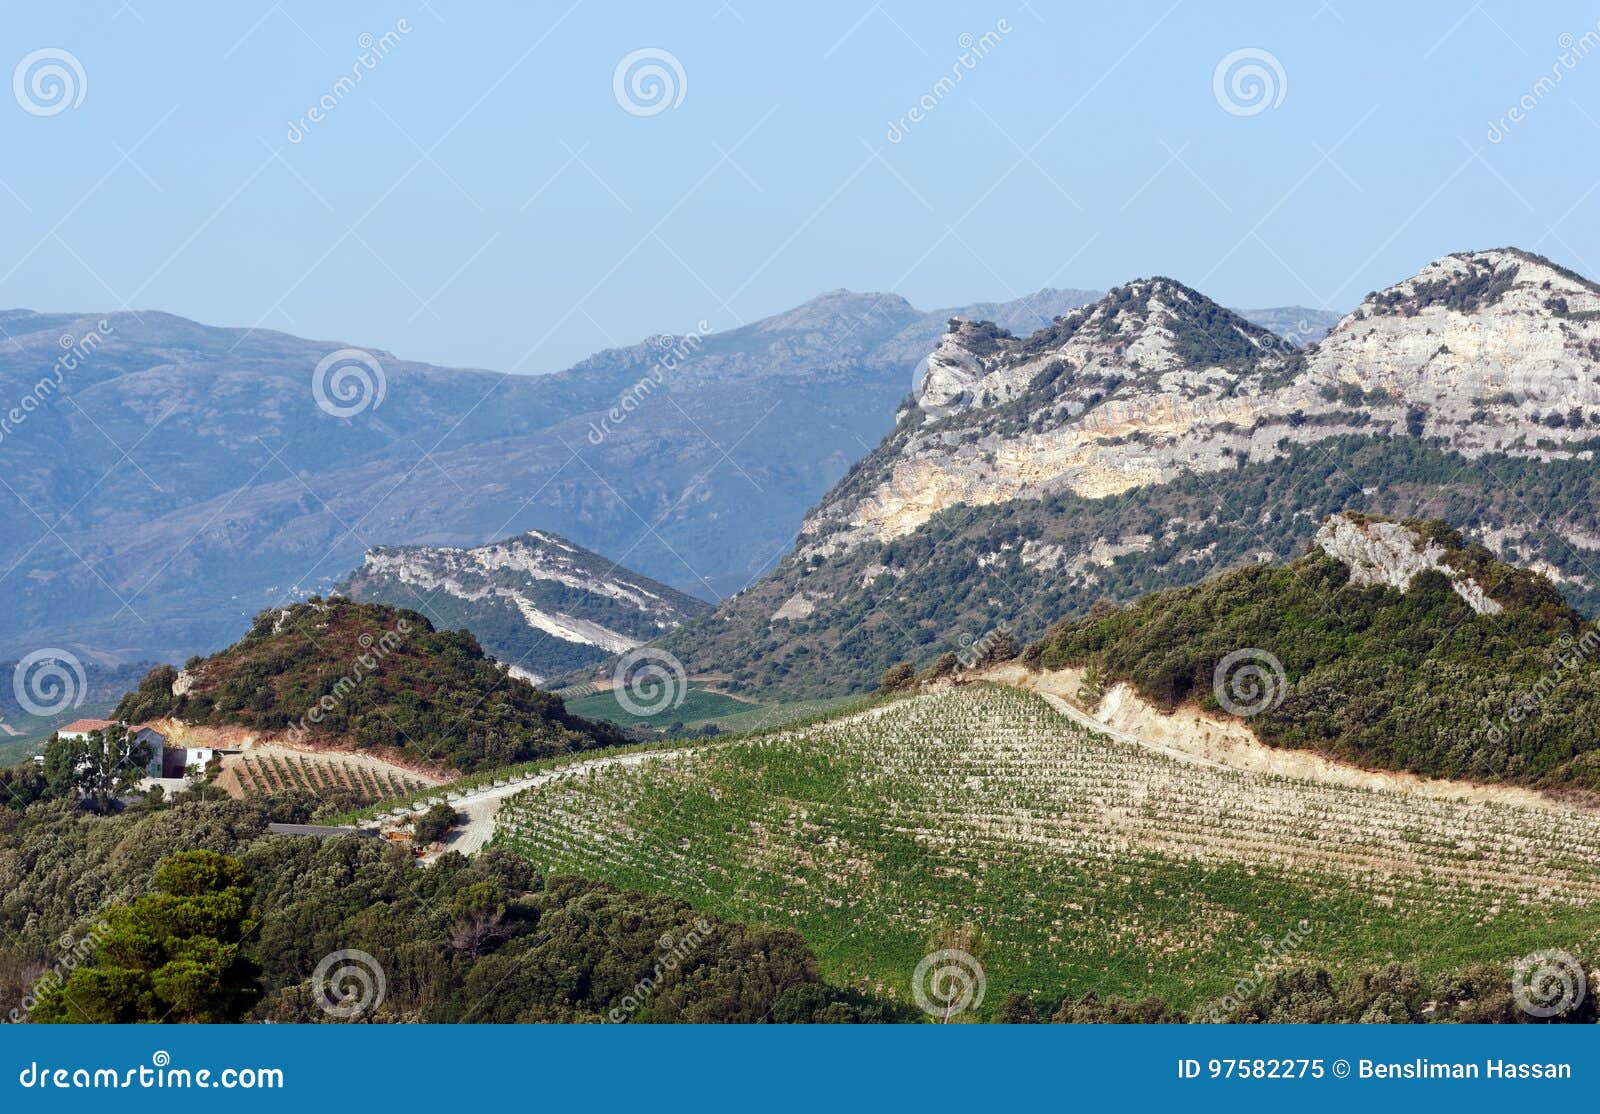 patrimonio hills in corsica island